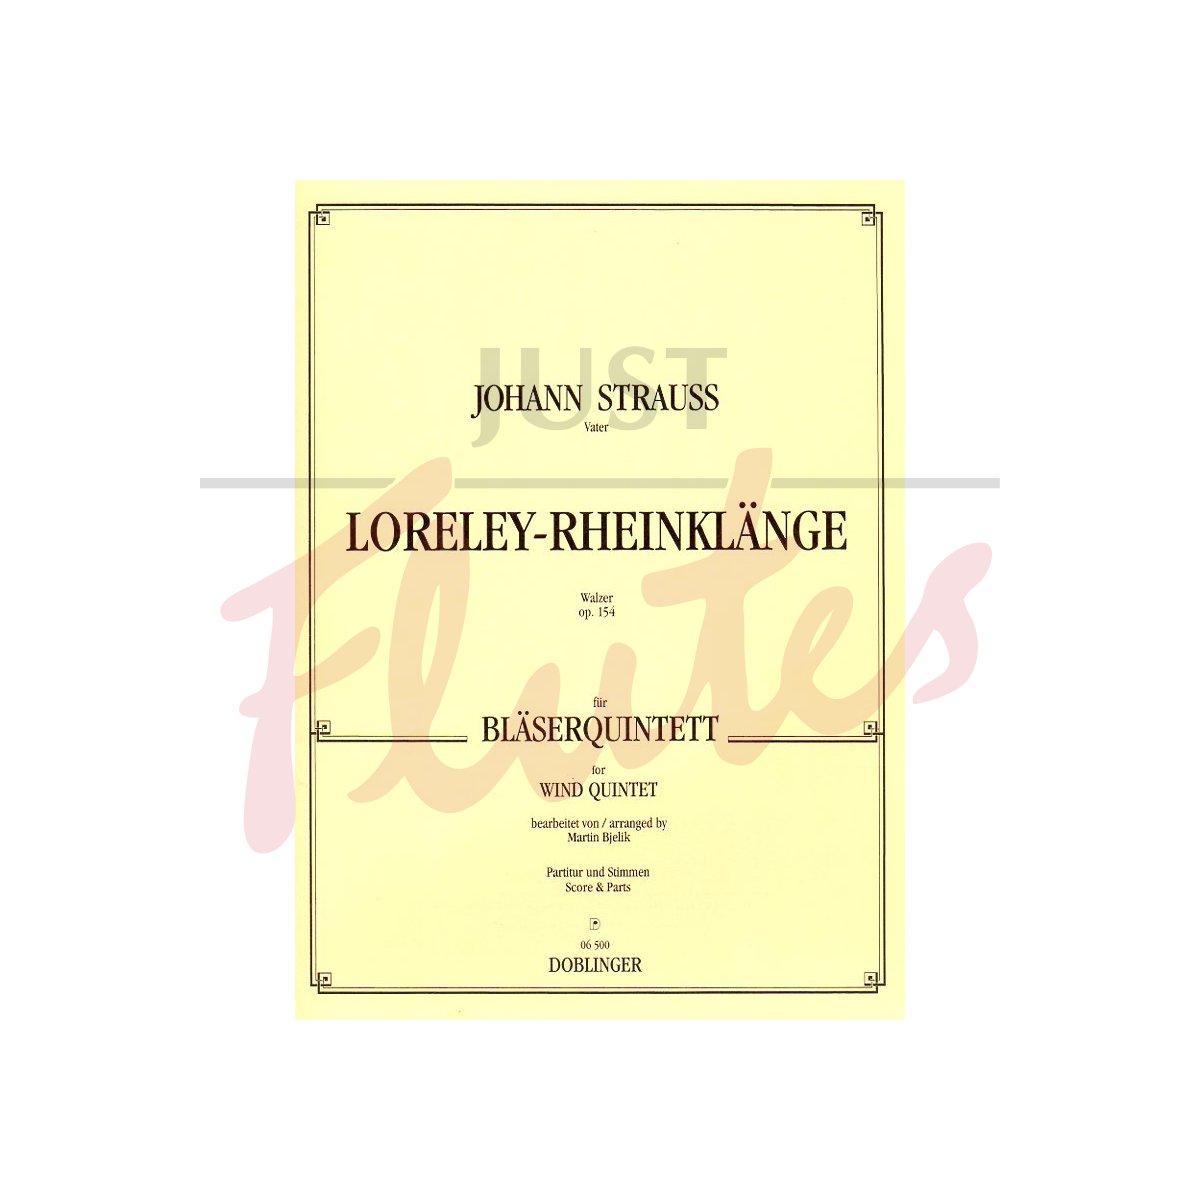 Loreley-Rheinklänge Walzer arranged for Wind Quintet